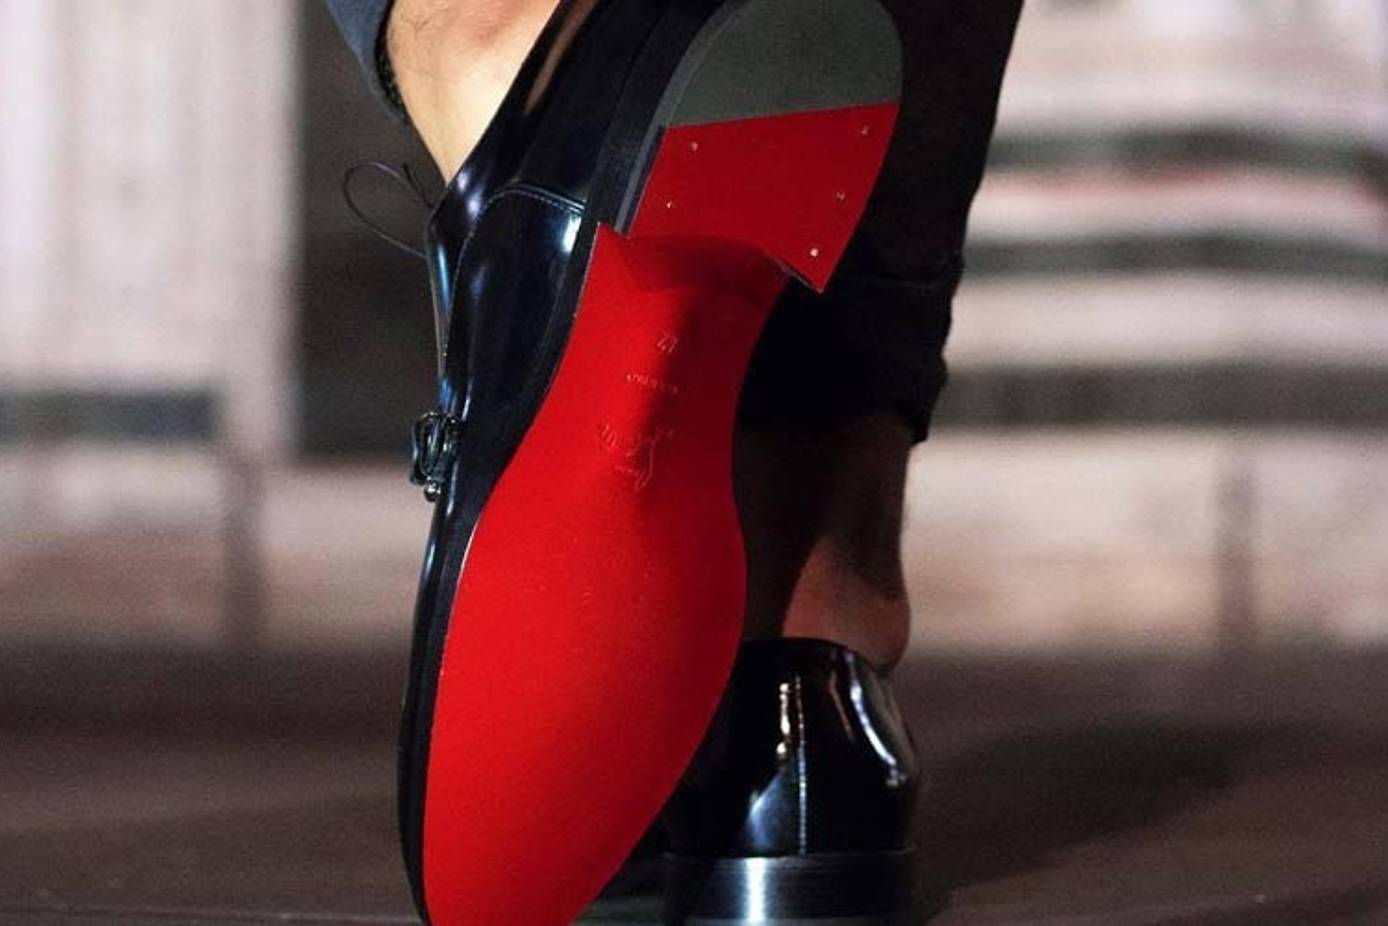 Louboutin pierde la exclusividad de las suelas rojas de sus zapatos, Estilo